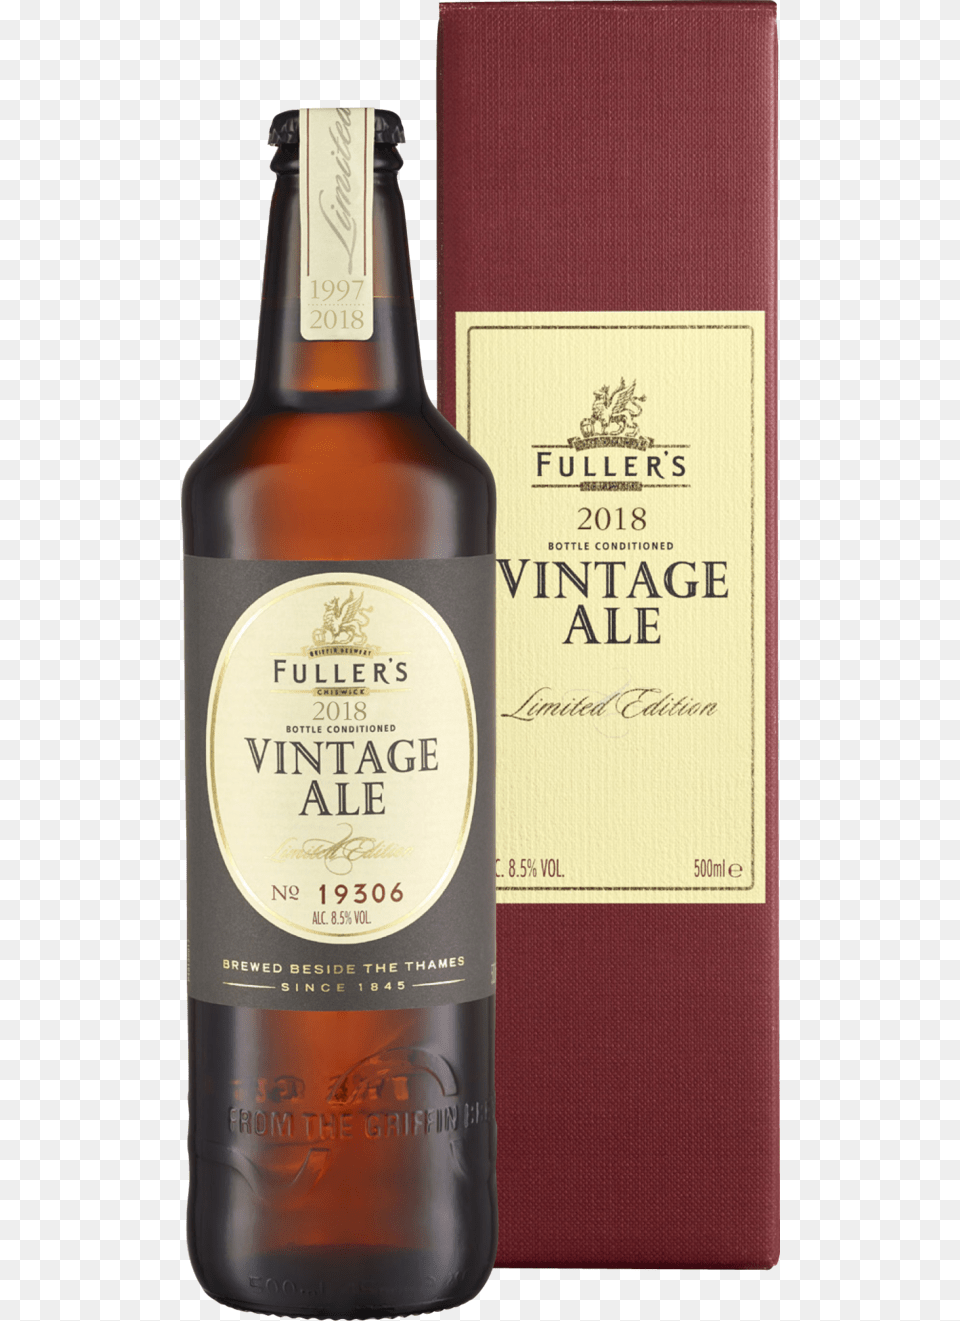 Fullers Vintage Ale Liqueur, Alcohol, Beer, Beer Bottle, Beverage Free Png Download